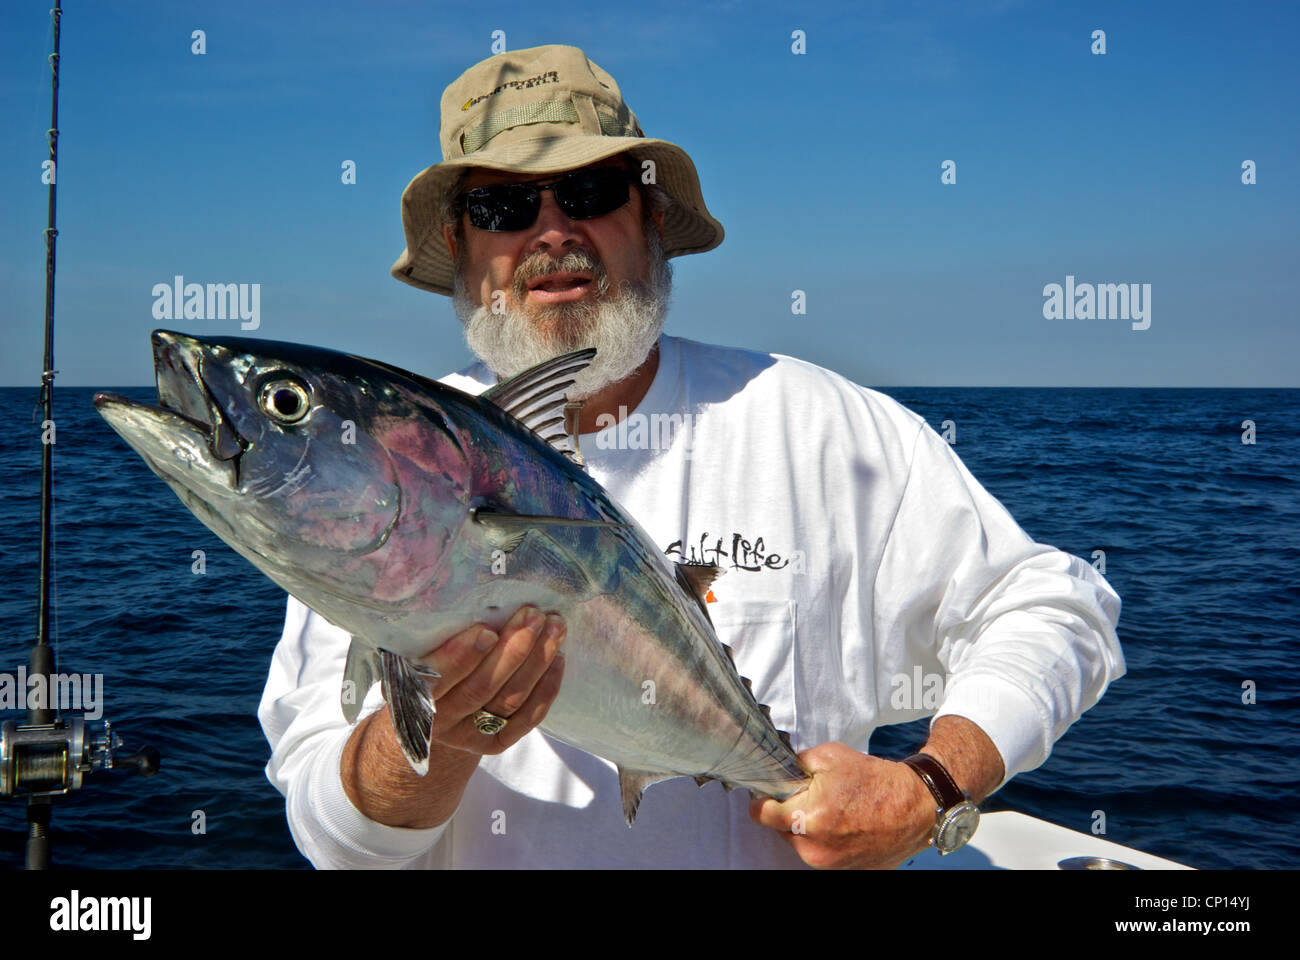 Vecchio Pescatore barbuto azienda big eyed bonito deepsea gamefish irridescent rosa blu colori argento Golfo del Messico Foto Stock